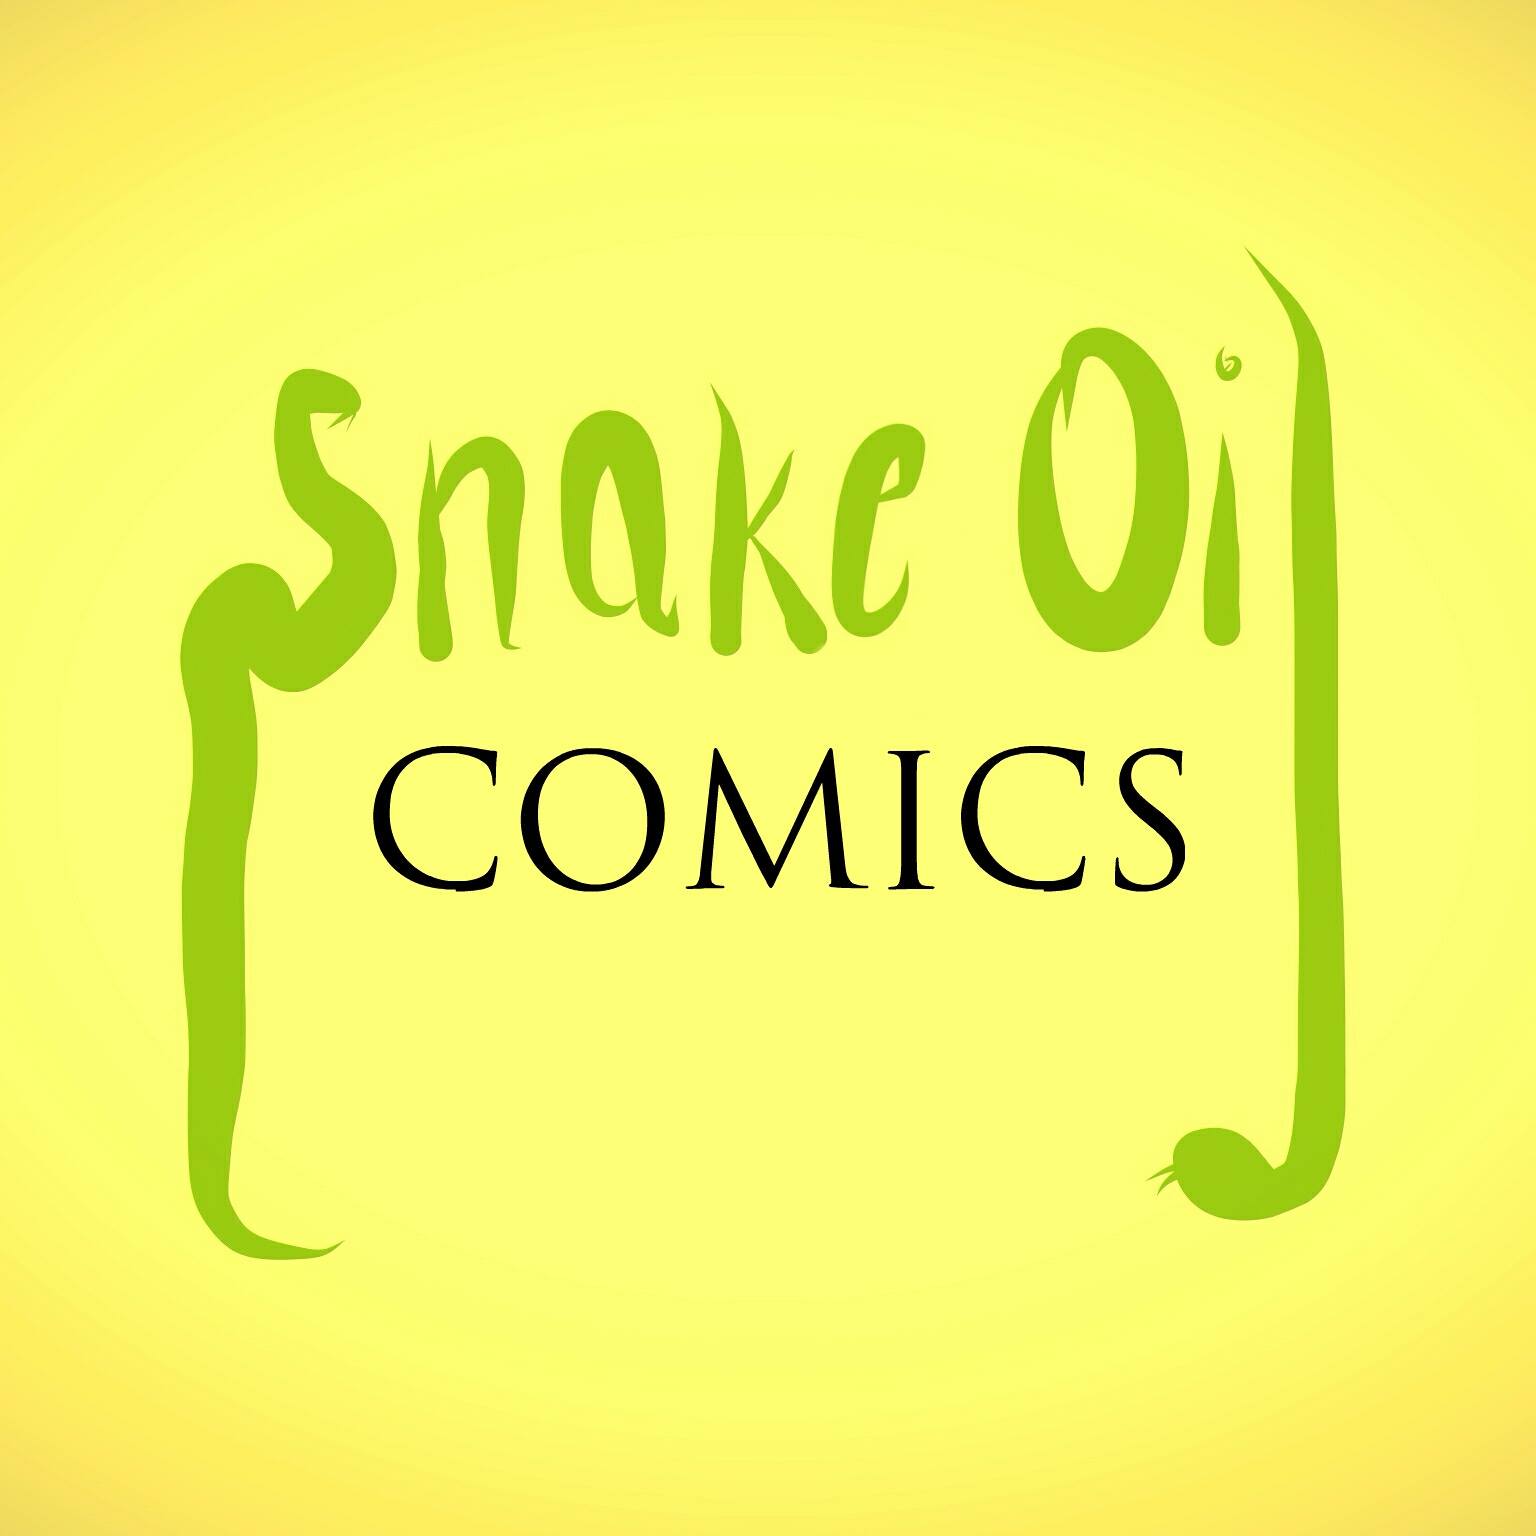 Snake Oil Comics